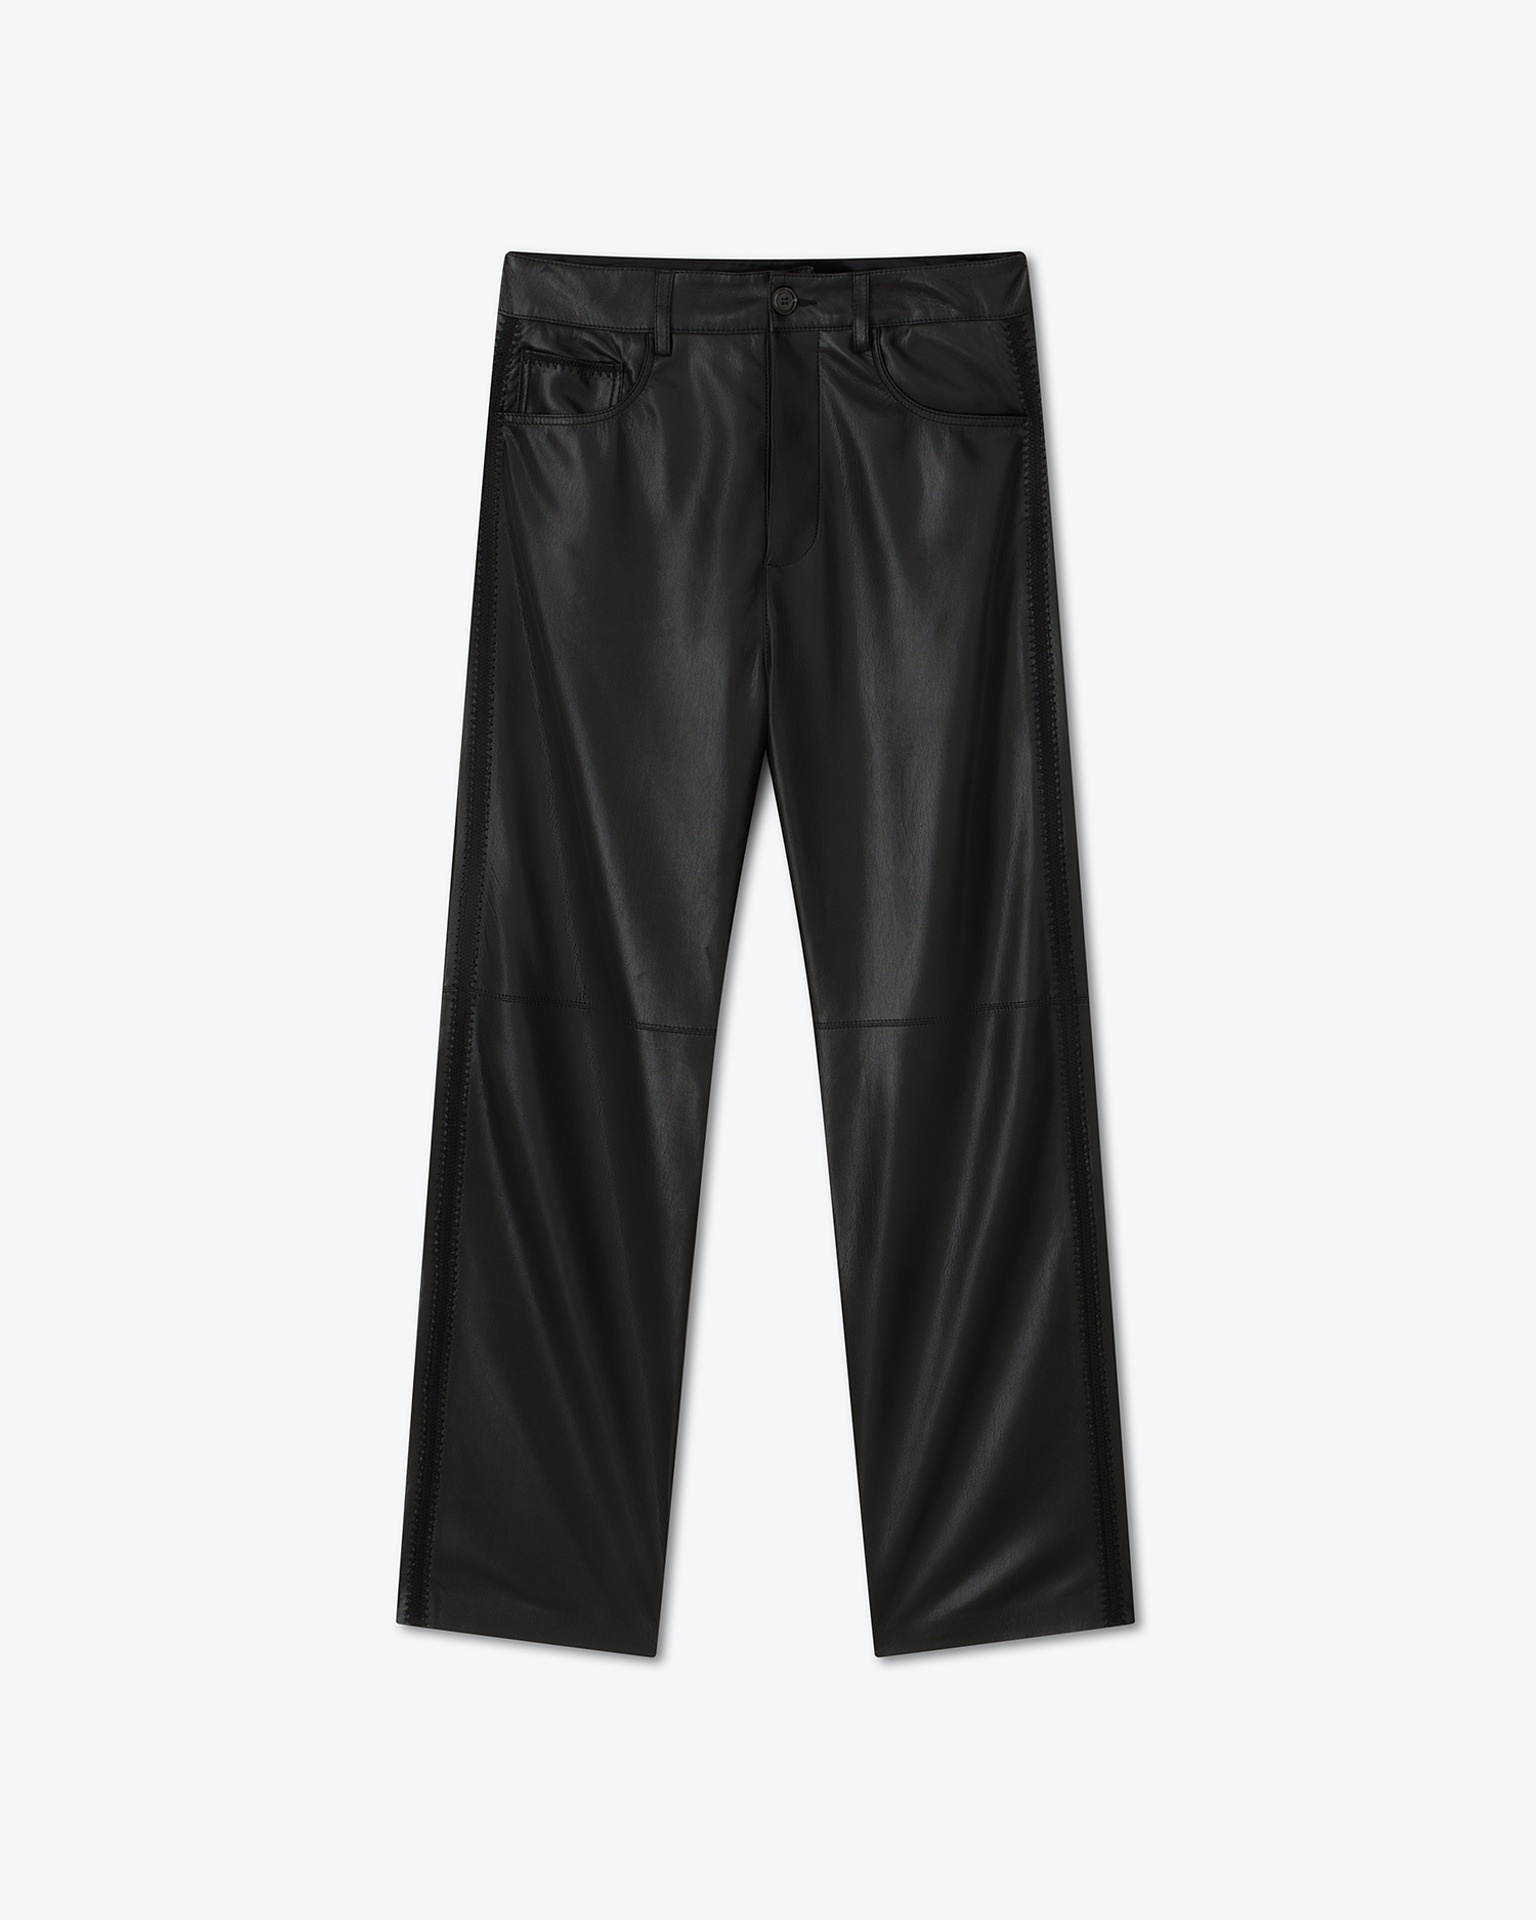 ARIC - OKOBOR™ alt-leather pants - Black - 1